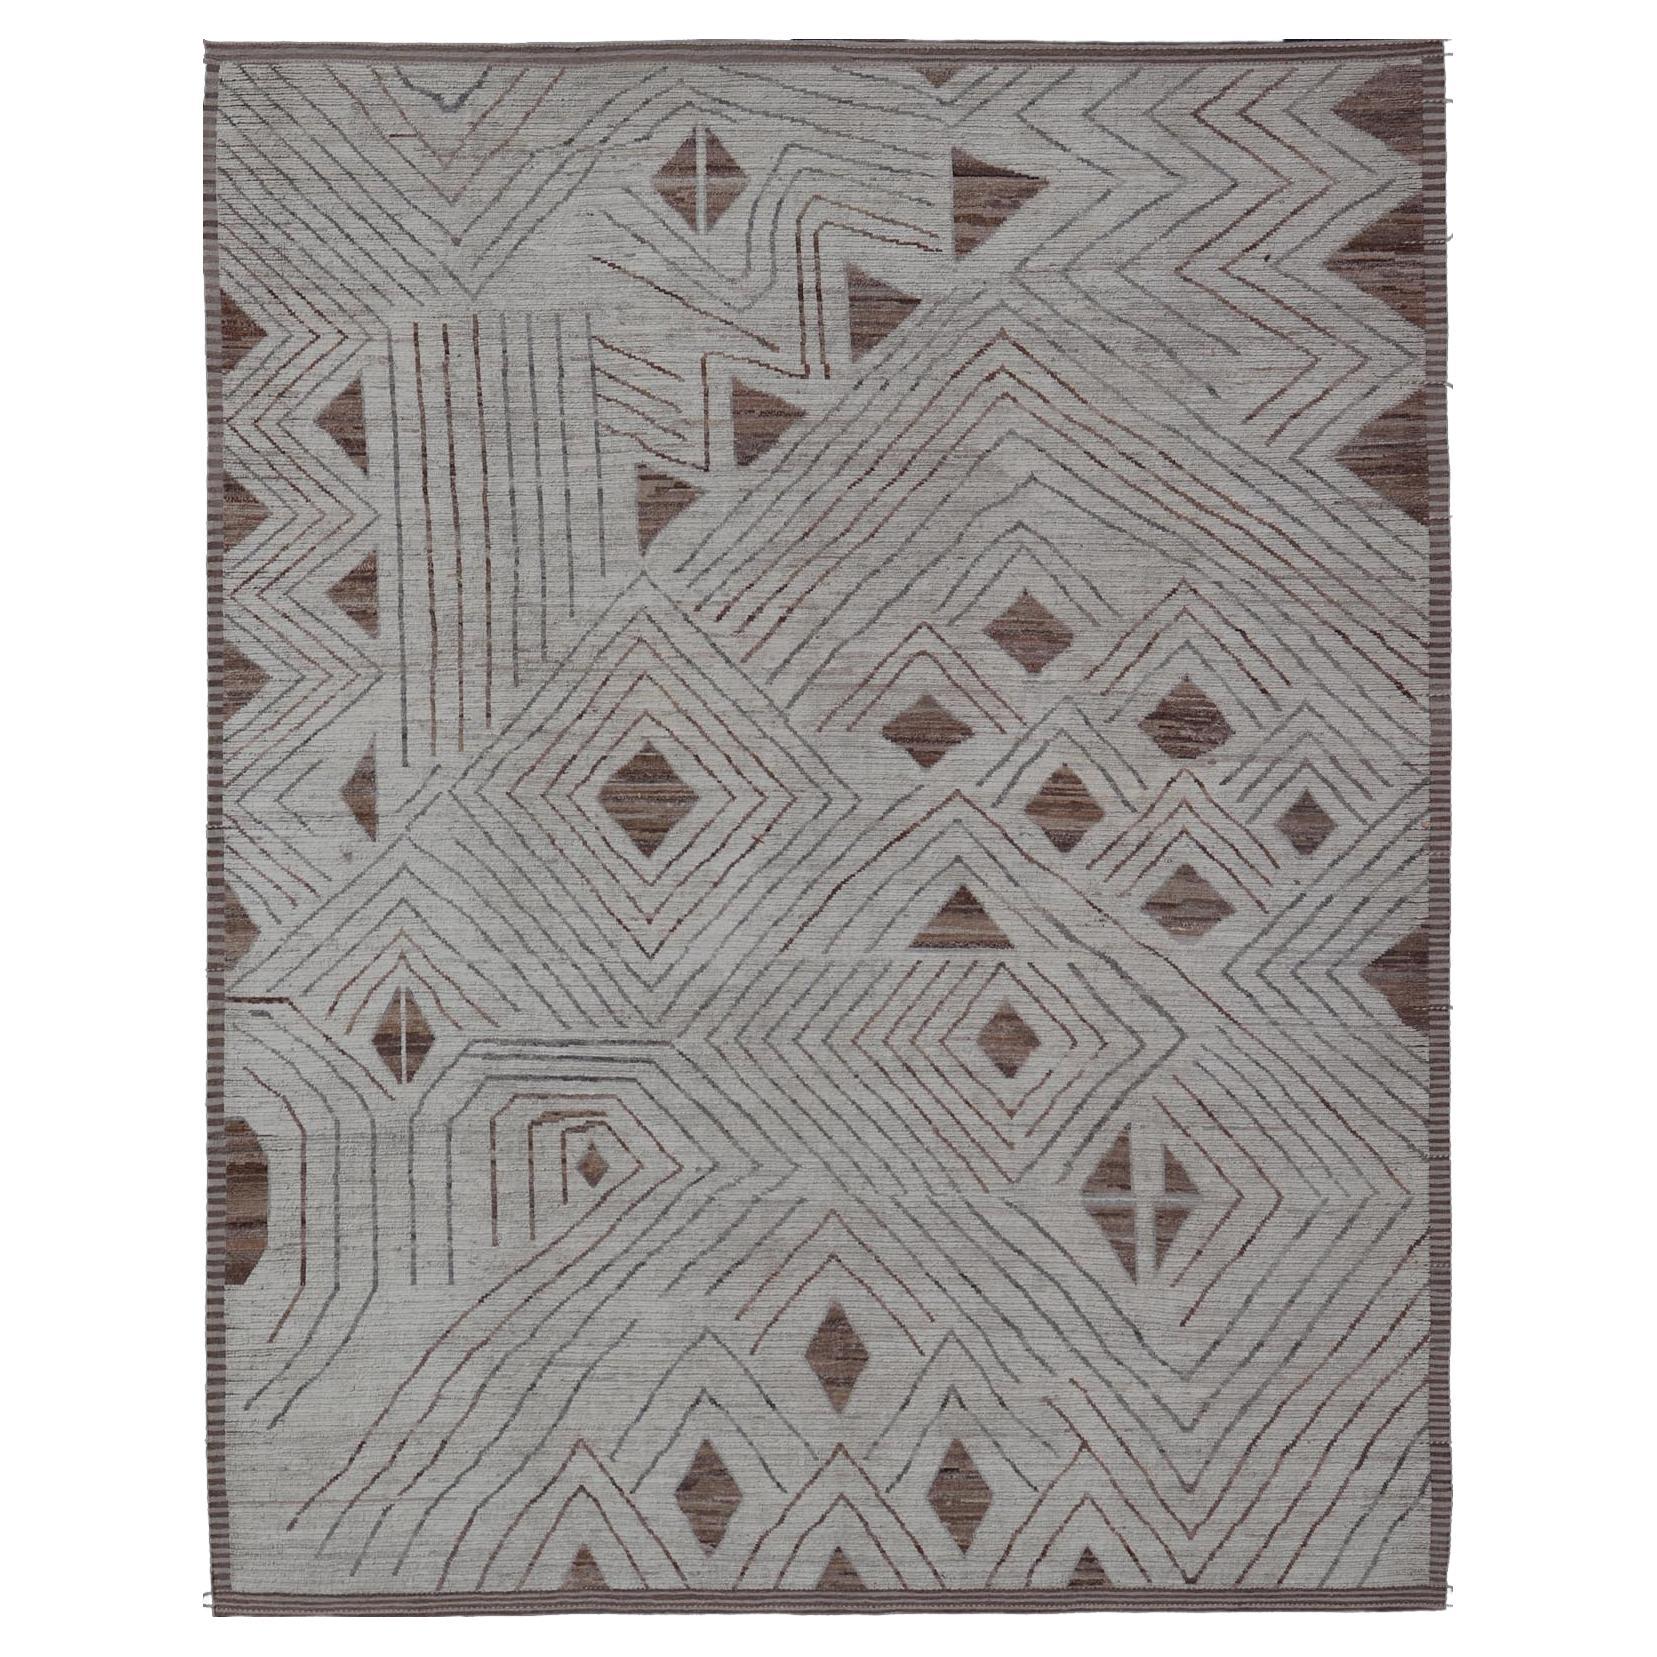 Moderner Teppich in Weiß- und Hellbrauntönen mit abstraktem und geometrischem Design